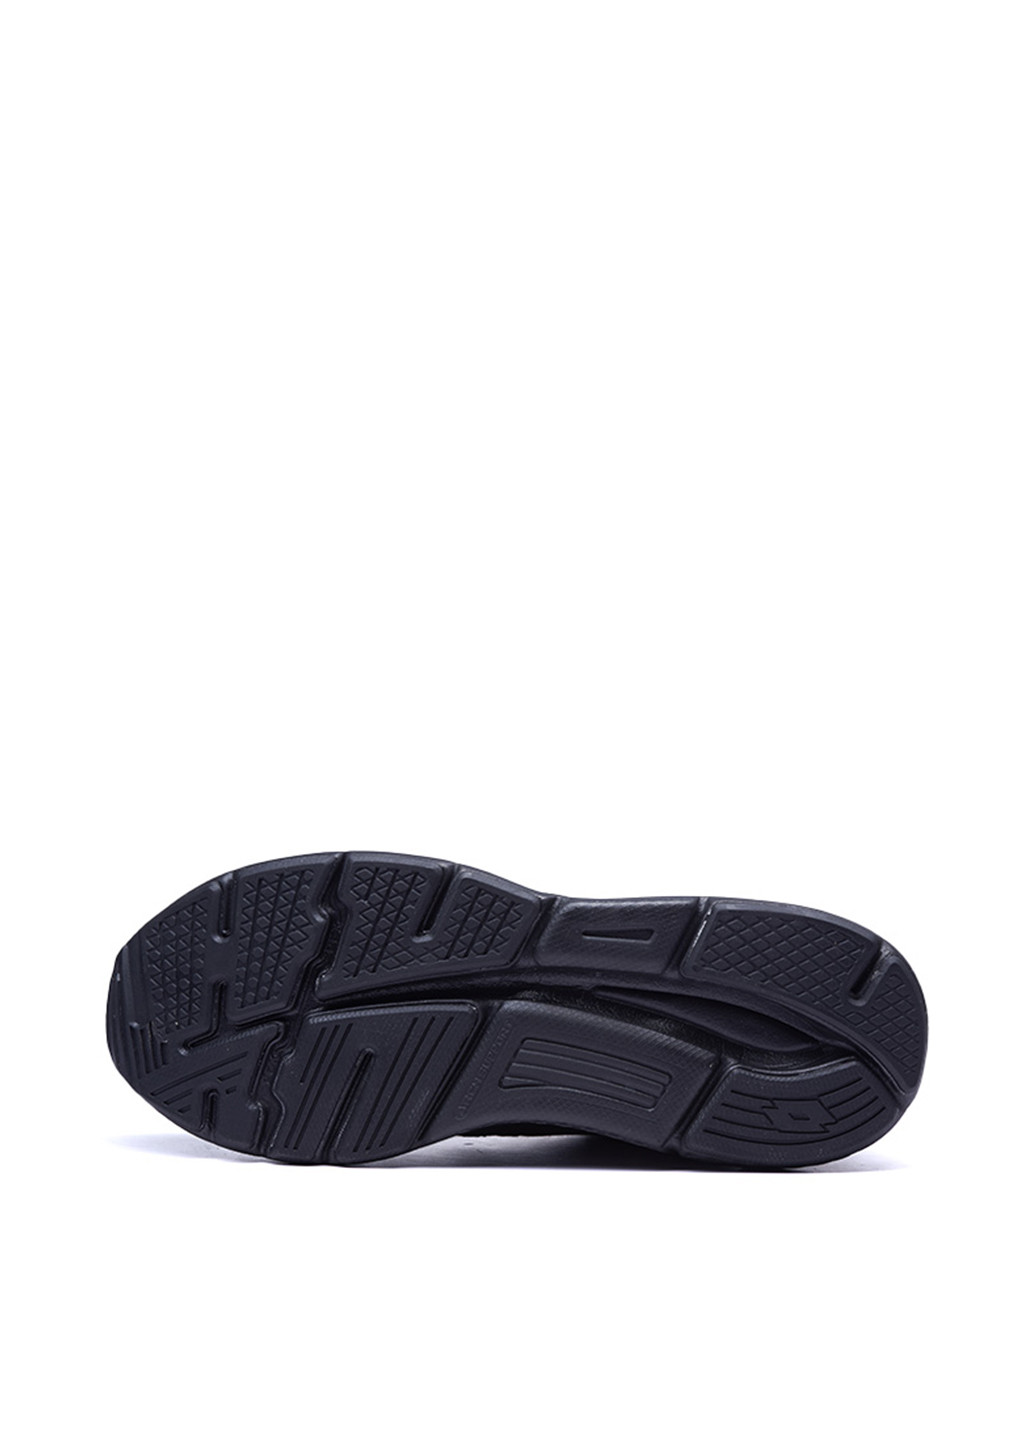 Черные демисезонные кроссовки Lotto SPEEDRIDE 601 X